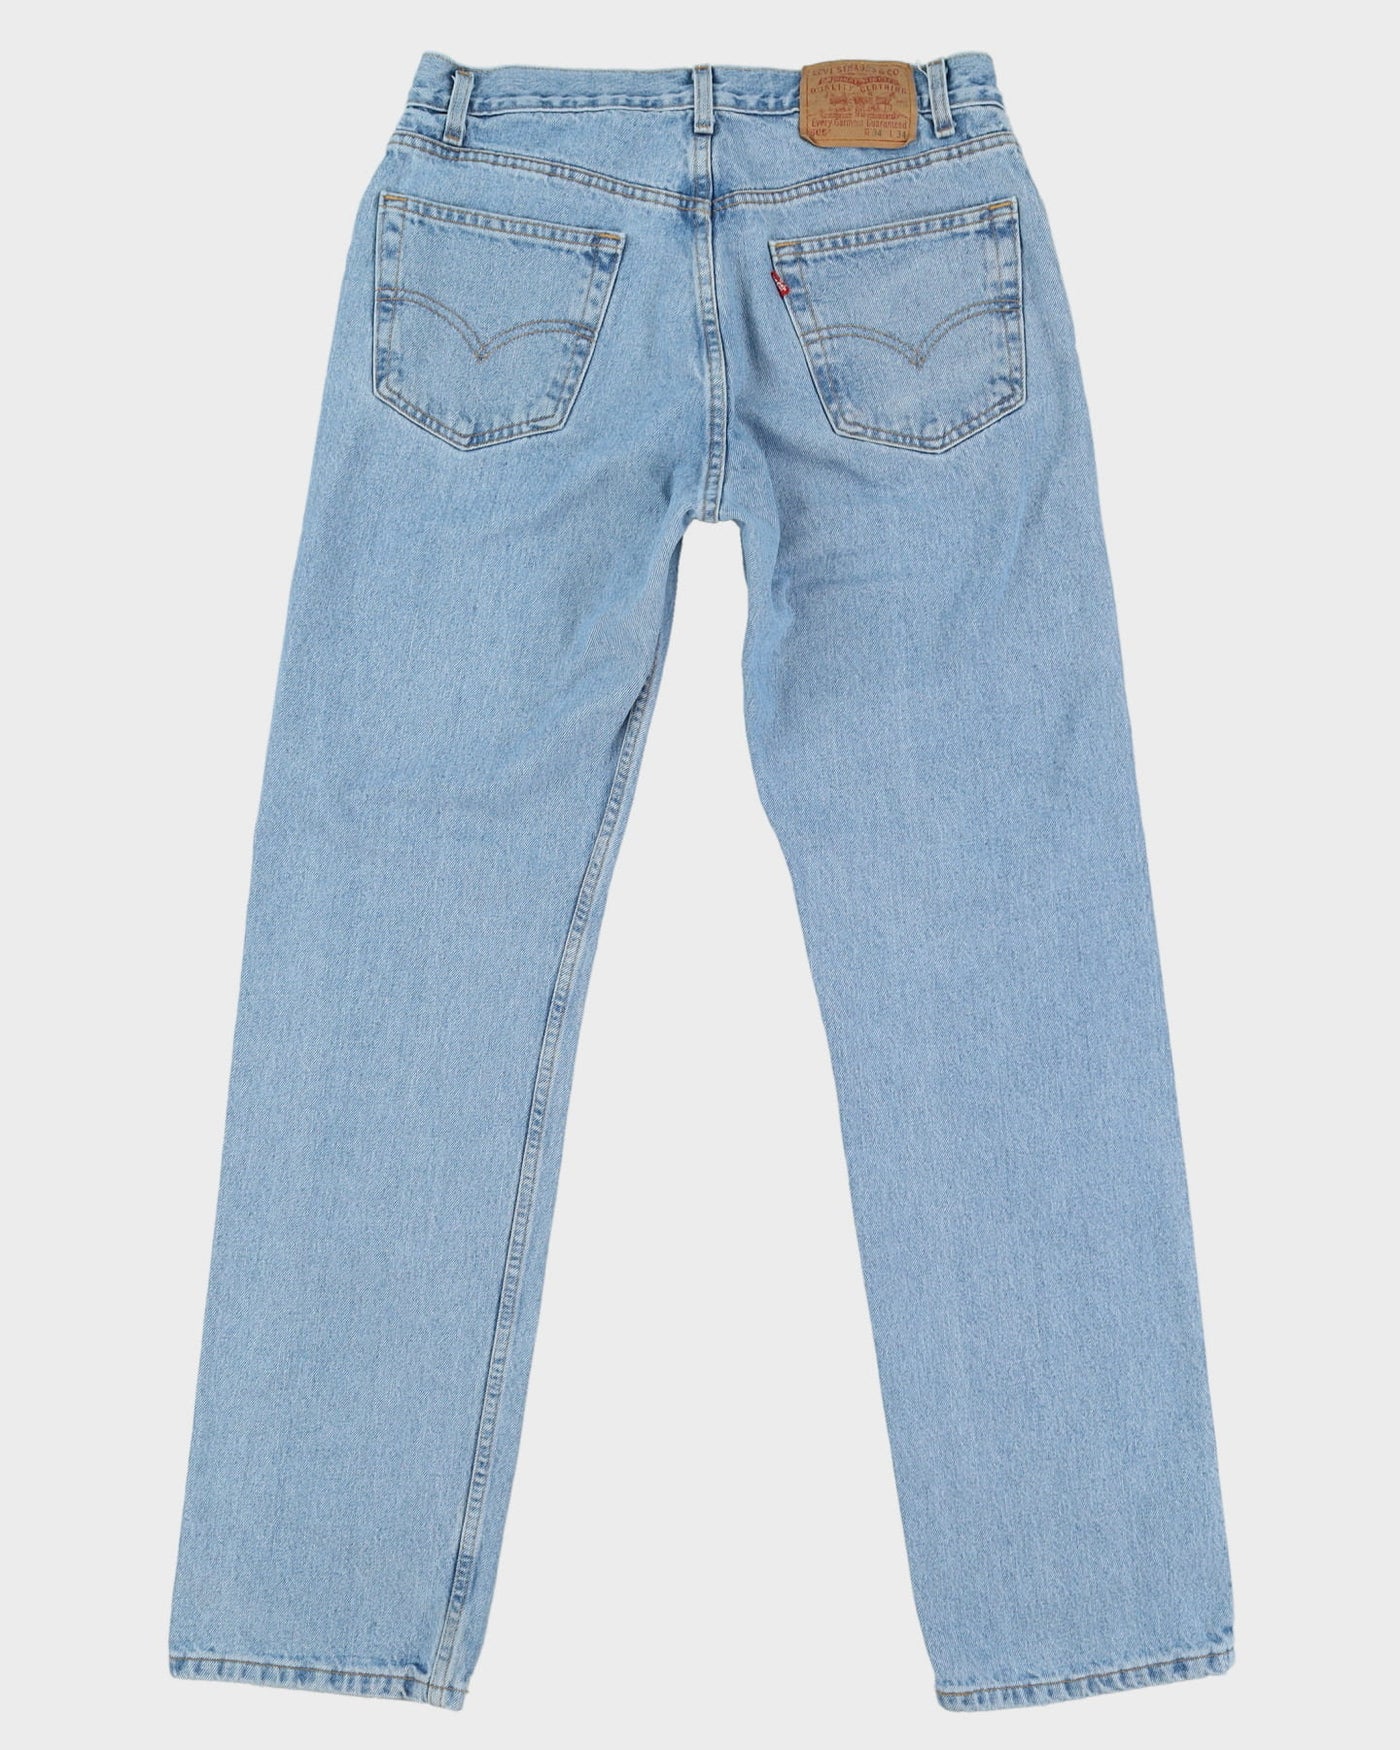 Vintage 80s Levi's 505 Blue Light Wash Jeans - W34 L34